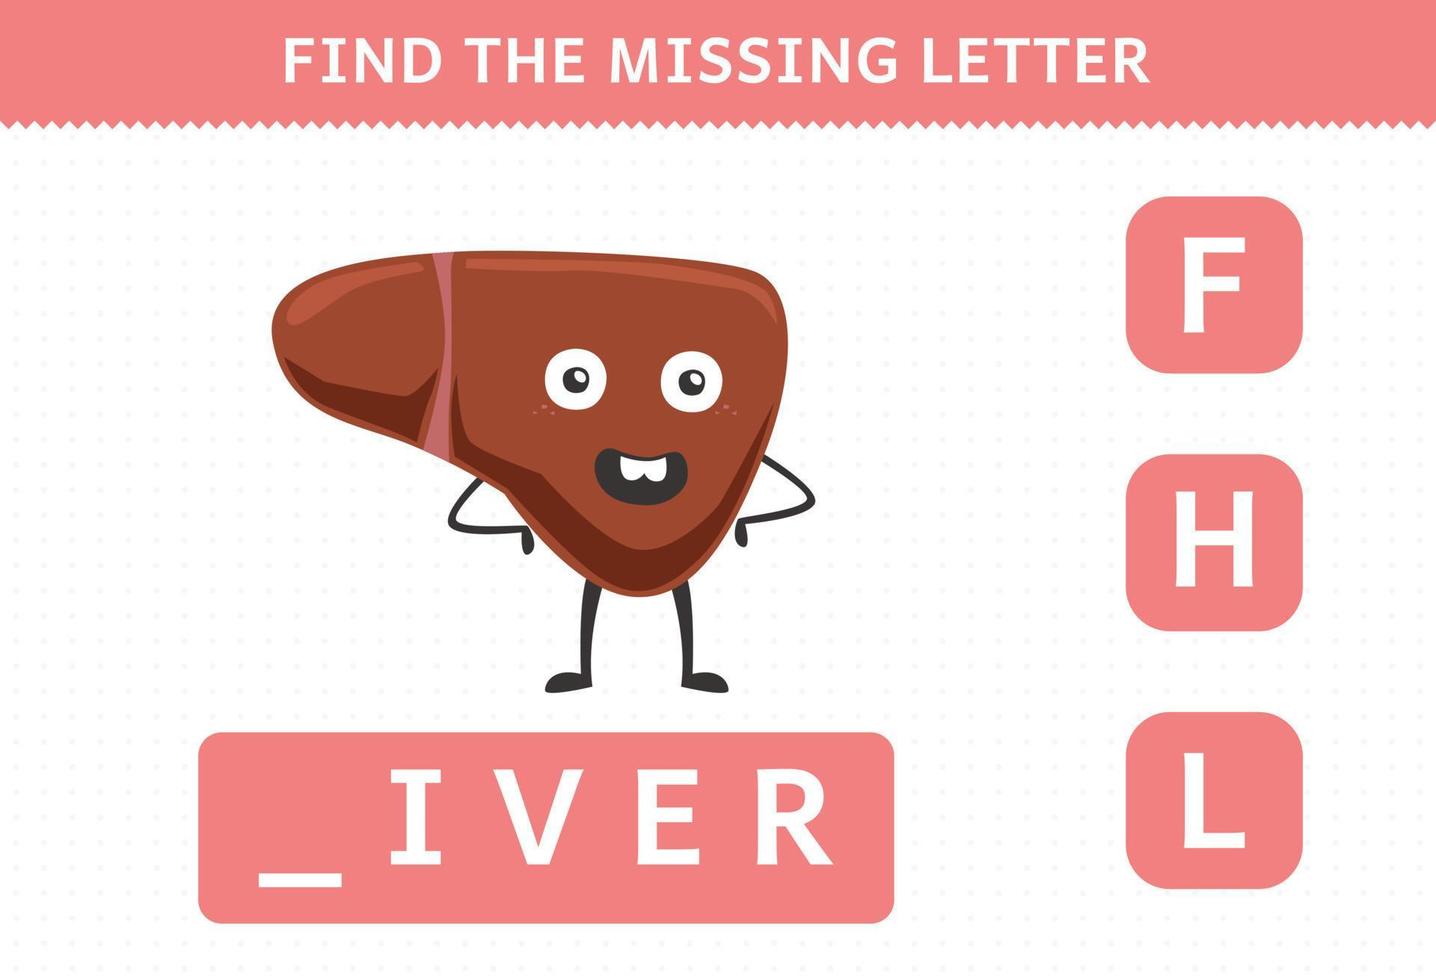 juego educativo para niños encontrar letra faltante hoja de trabajo de hígado de órgano humano de dibujos animados lindo vector